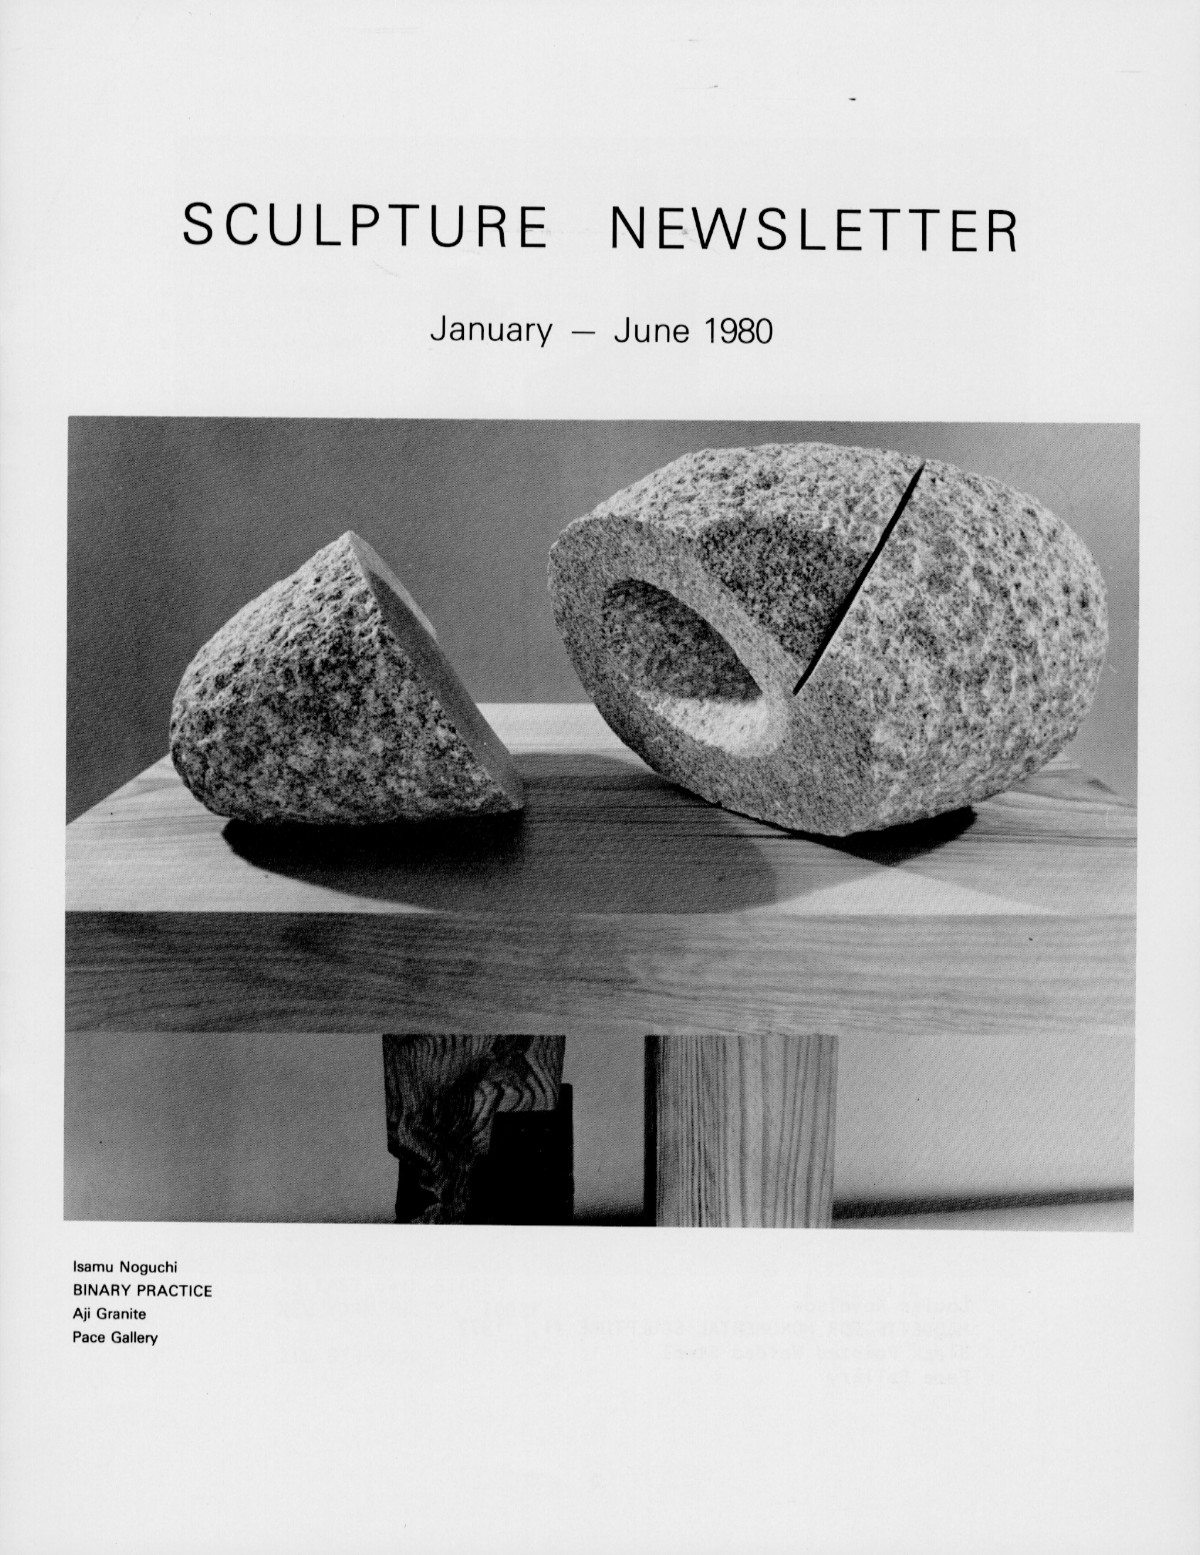 Storm King Art Center Newsletter, January - June 1980